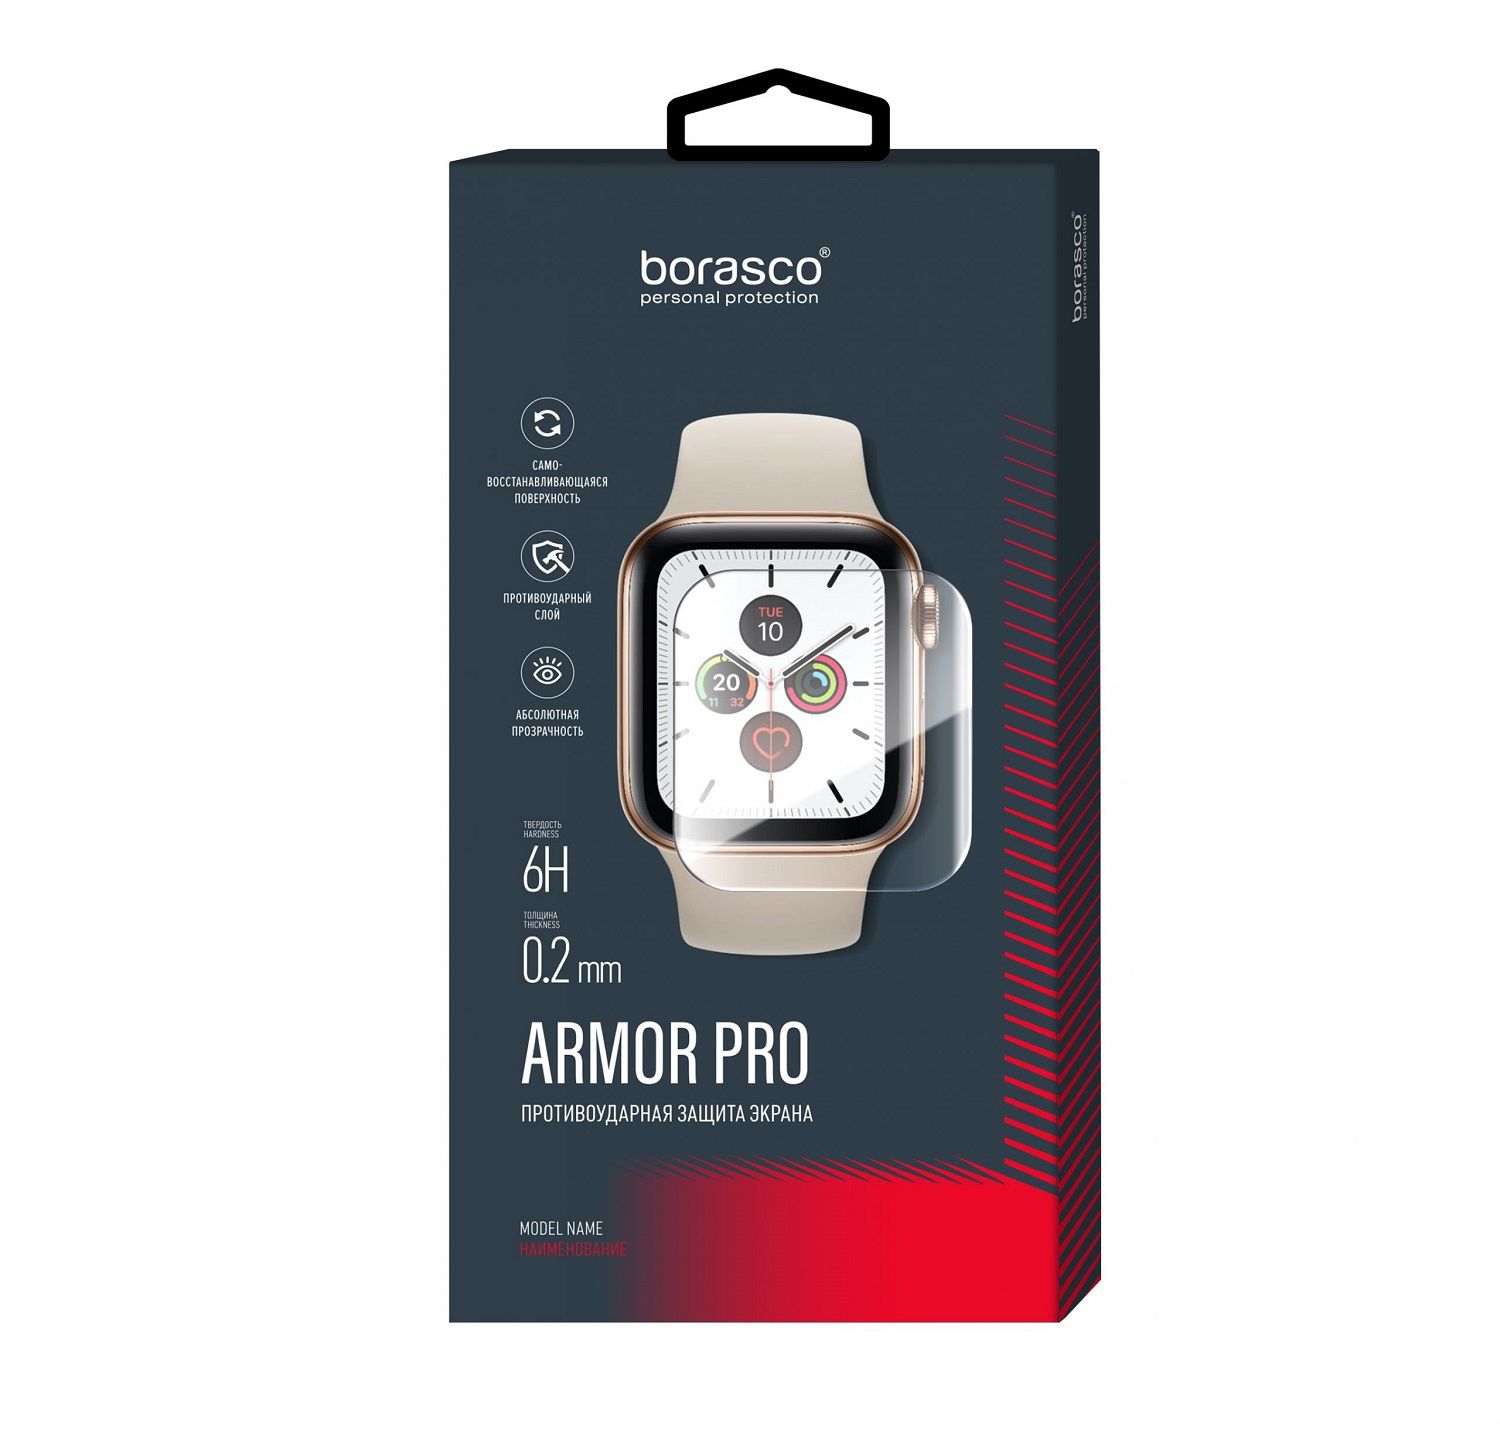 Стекло защитное BoraSCO Armor Pro для Apple Watch SE (44mm) защитное стекло luxcase для apple watch 44mm 3d pmma black frame 84128